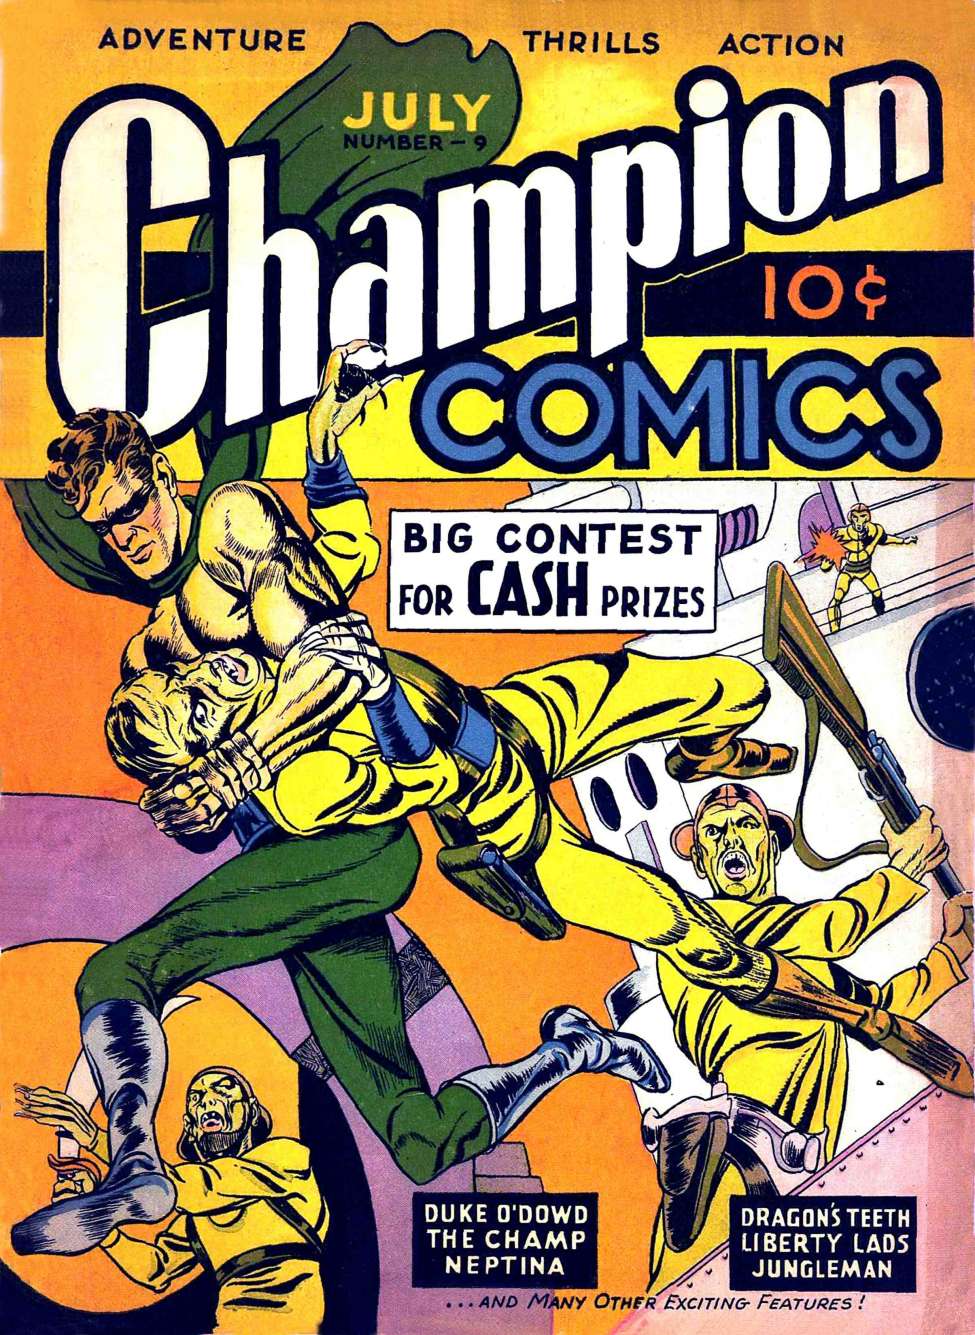 Book Cover For Champion Comics 9 (6 fiche)